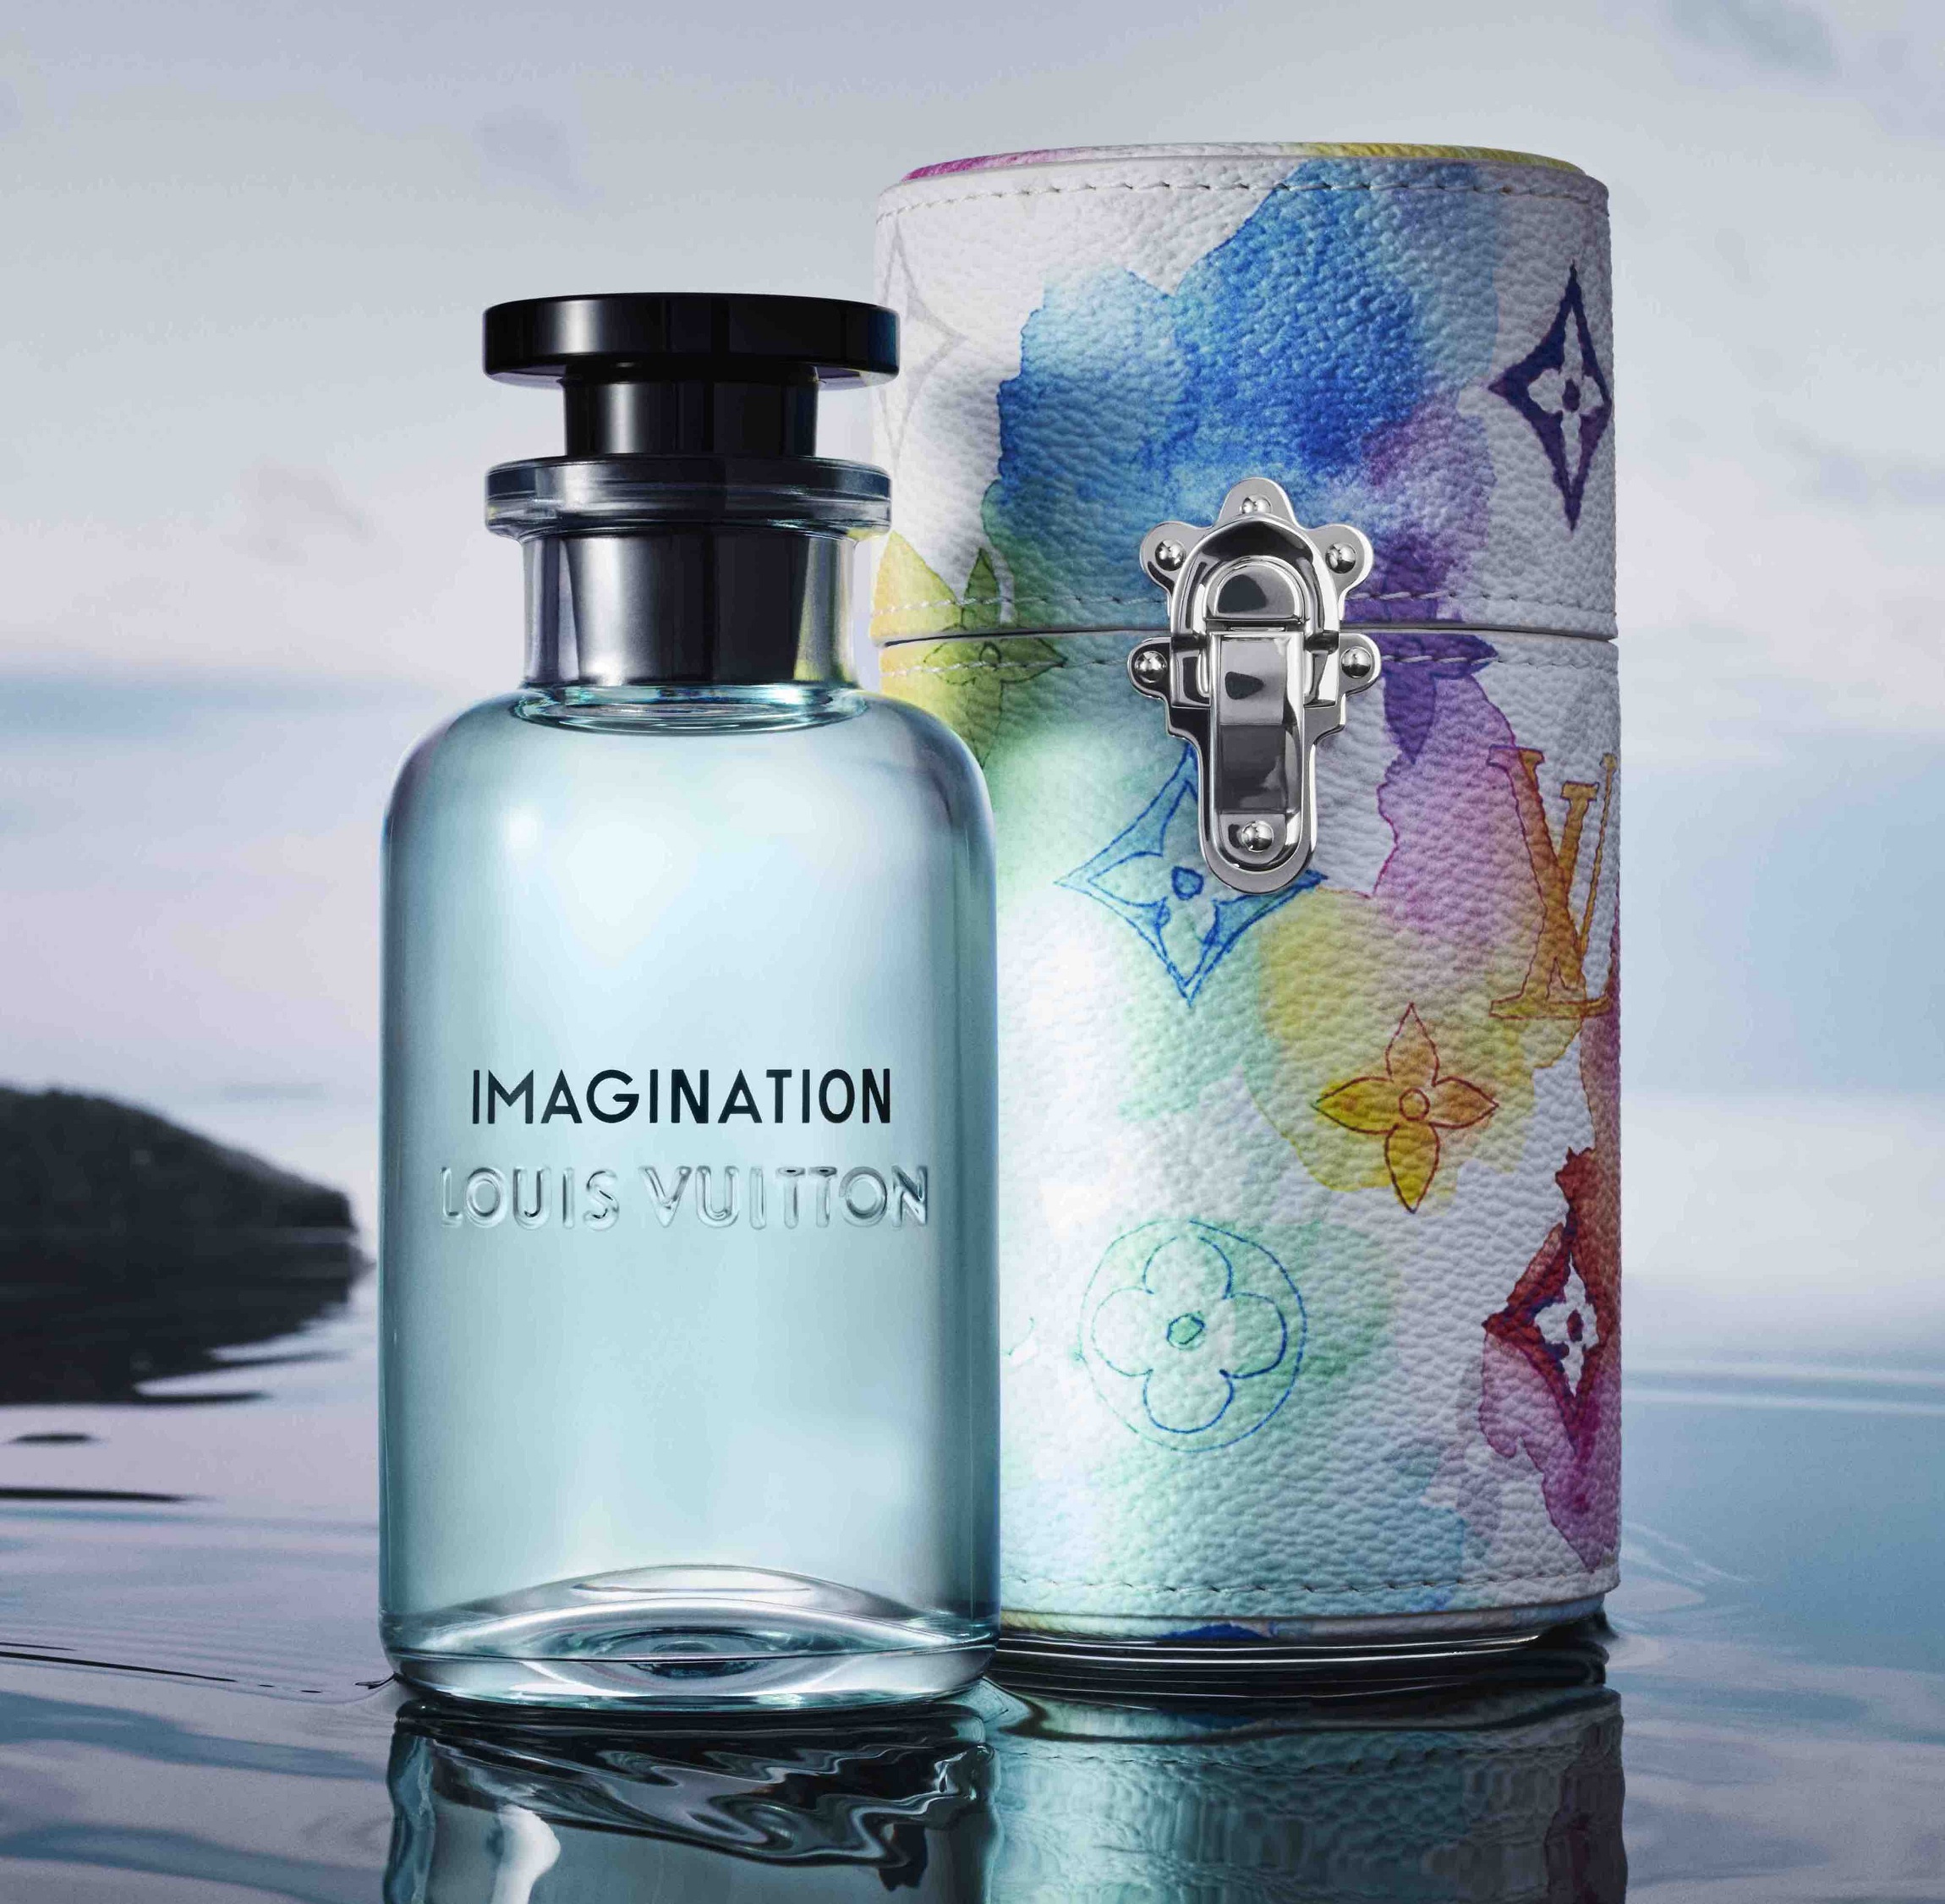 Louis Vuitton revela suas 5 primeiras fragrâncias masculinas - GQ